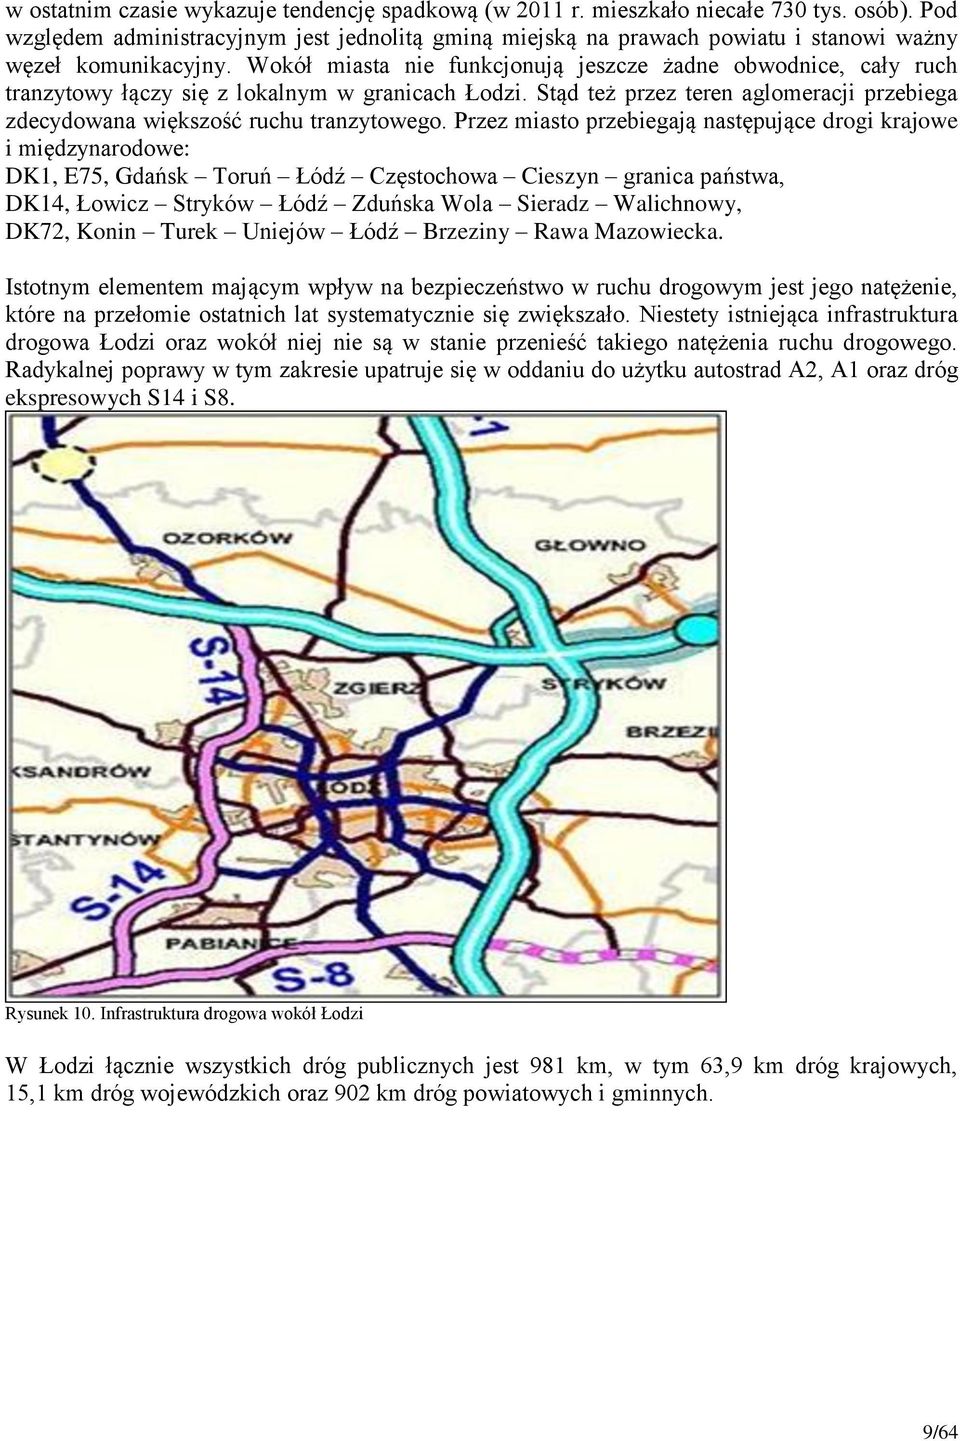 Wokół miasta nie funkcjonują jeszcze żadne obwodnice, cały ruch tranzytowy łączy się z lokalnym w granicach Łodzi. Stąd też przez teren aglomeracji przebiega zdecydowana większość ruchu tranzytowego.